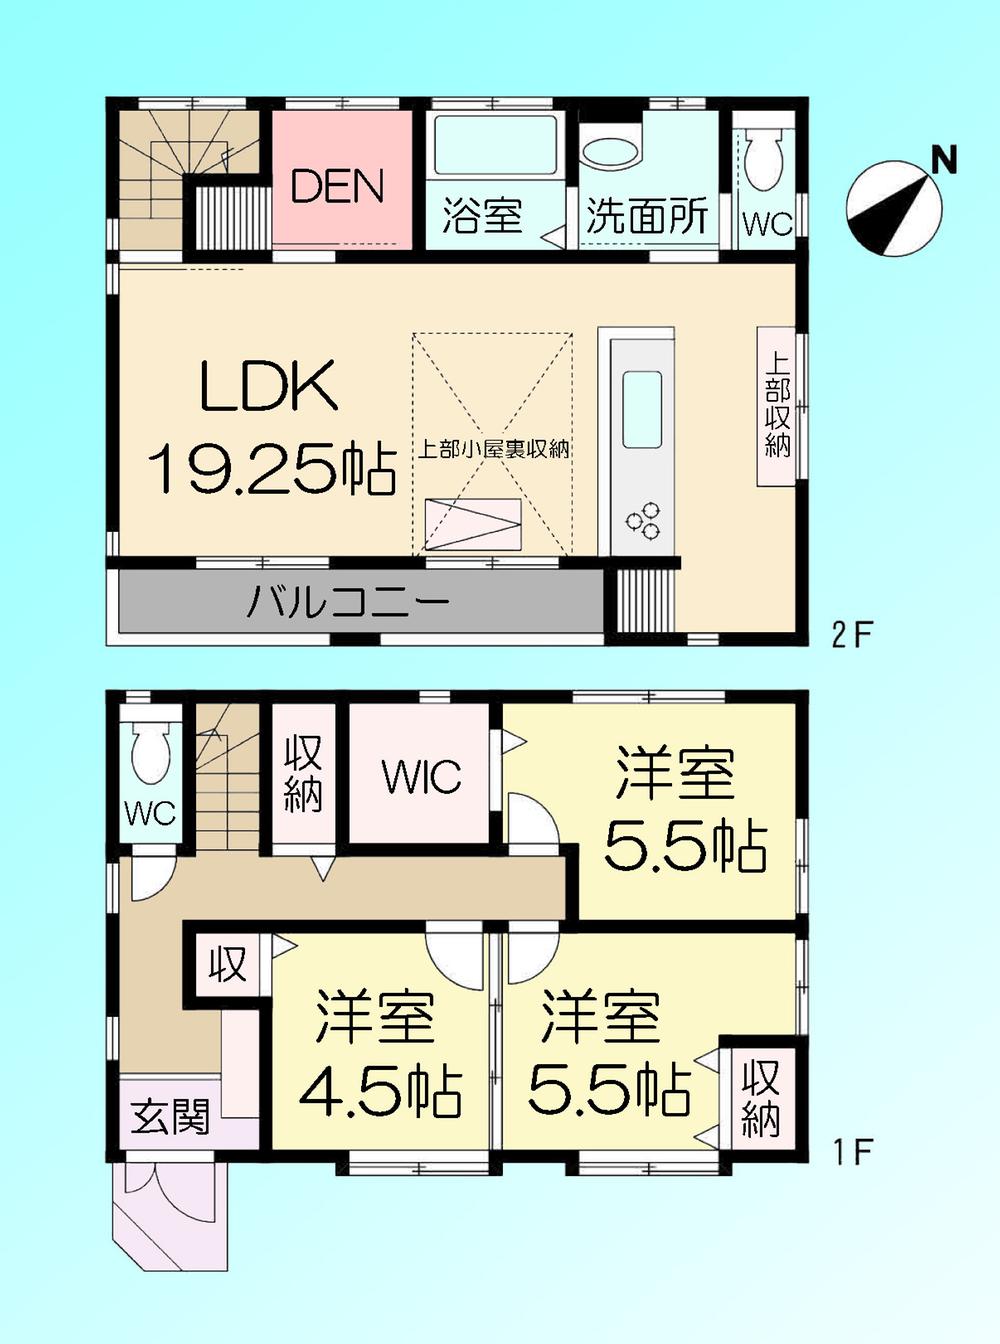 Floor plan. 23.8 million yen, 3LDK, Land area 100.08 sq m , Building area 91.49 sq m